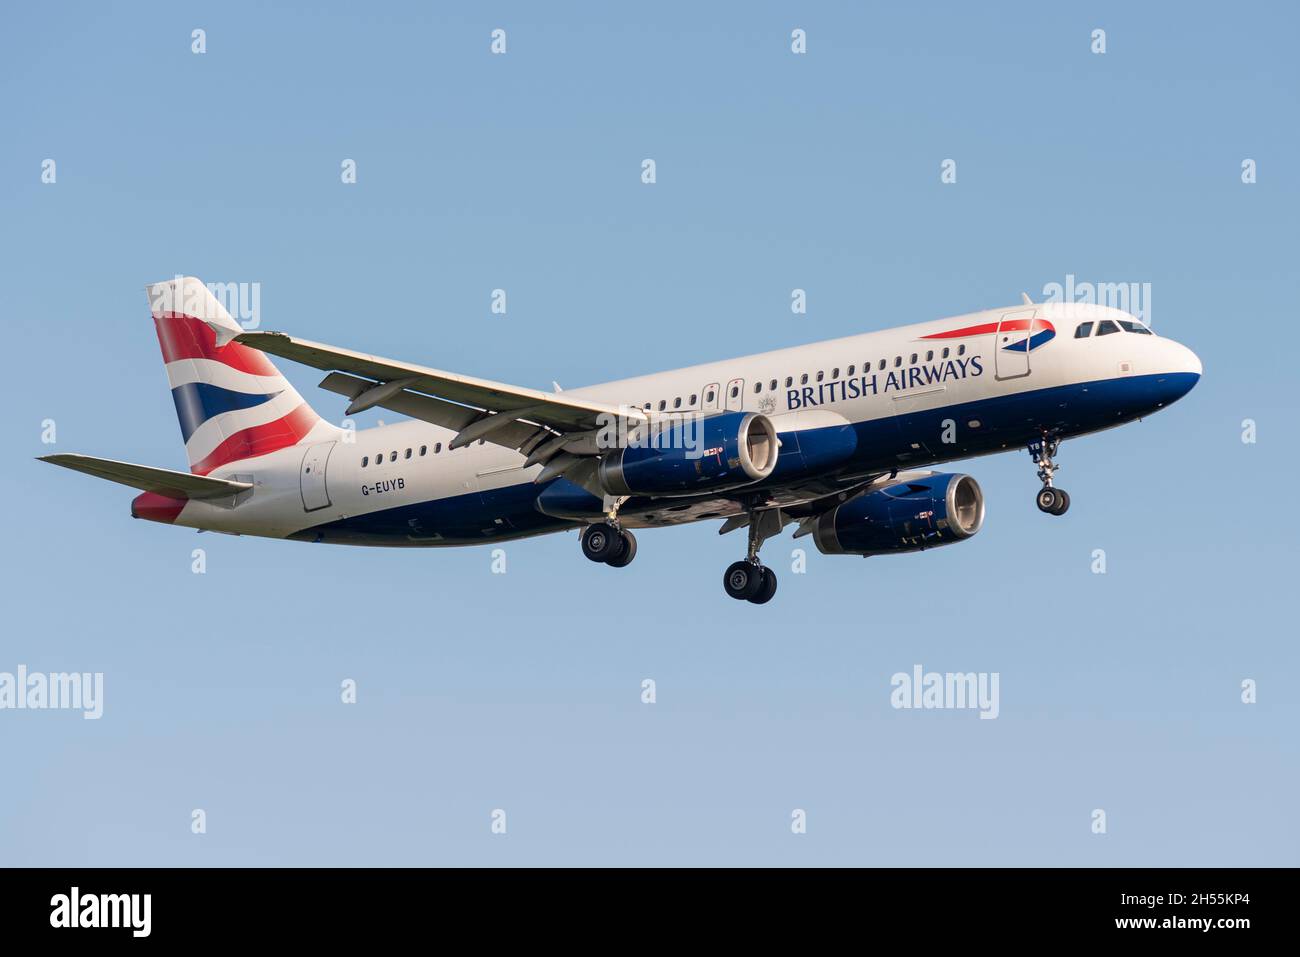 British Airways Airbus A320 aereo aereo aereo aereo aereo jet G-EUYB sull'approccio per atterrare all'aeroporto Heathrow di Londra, Regno Unito. Piccolo aereo a corto raggio Foto Stock